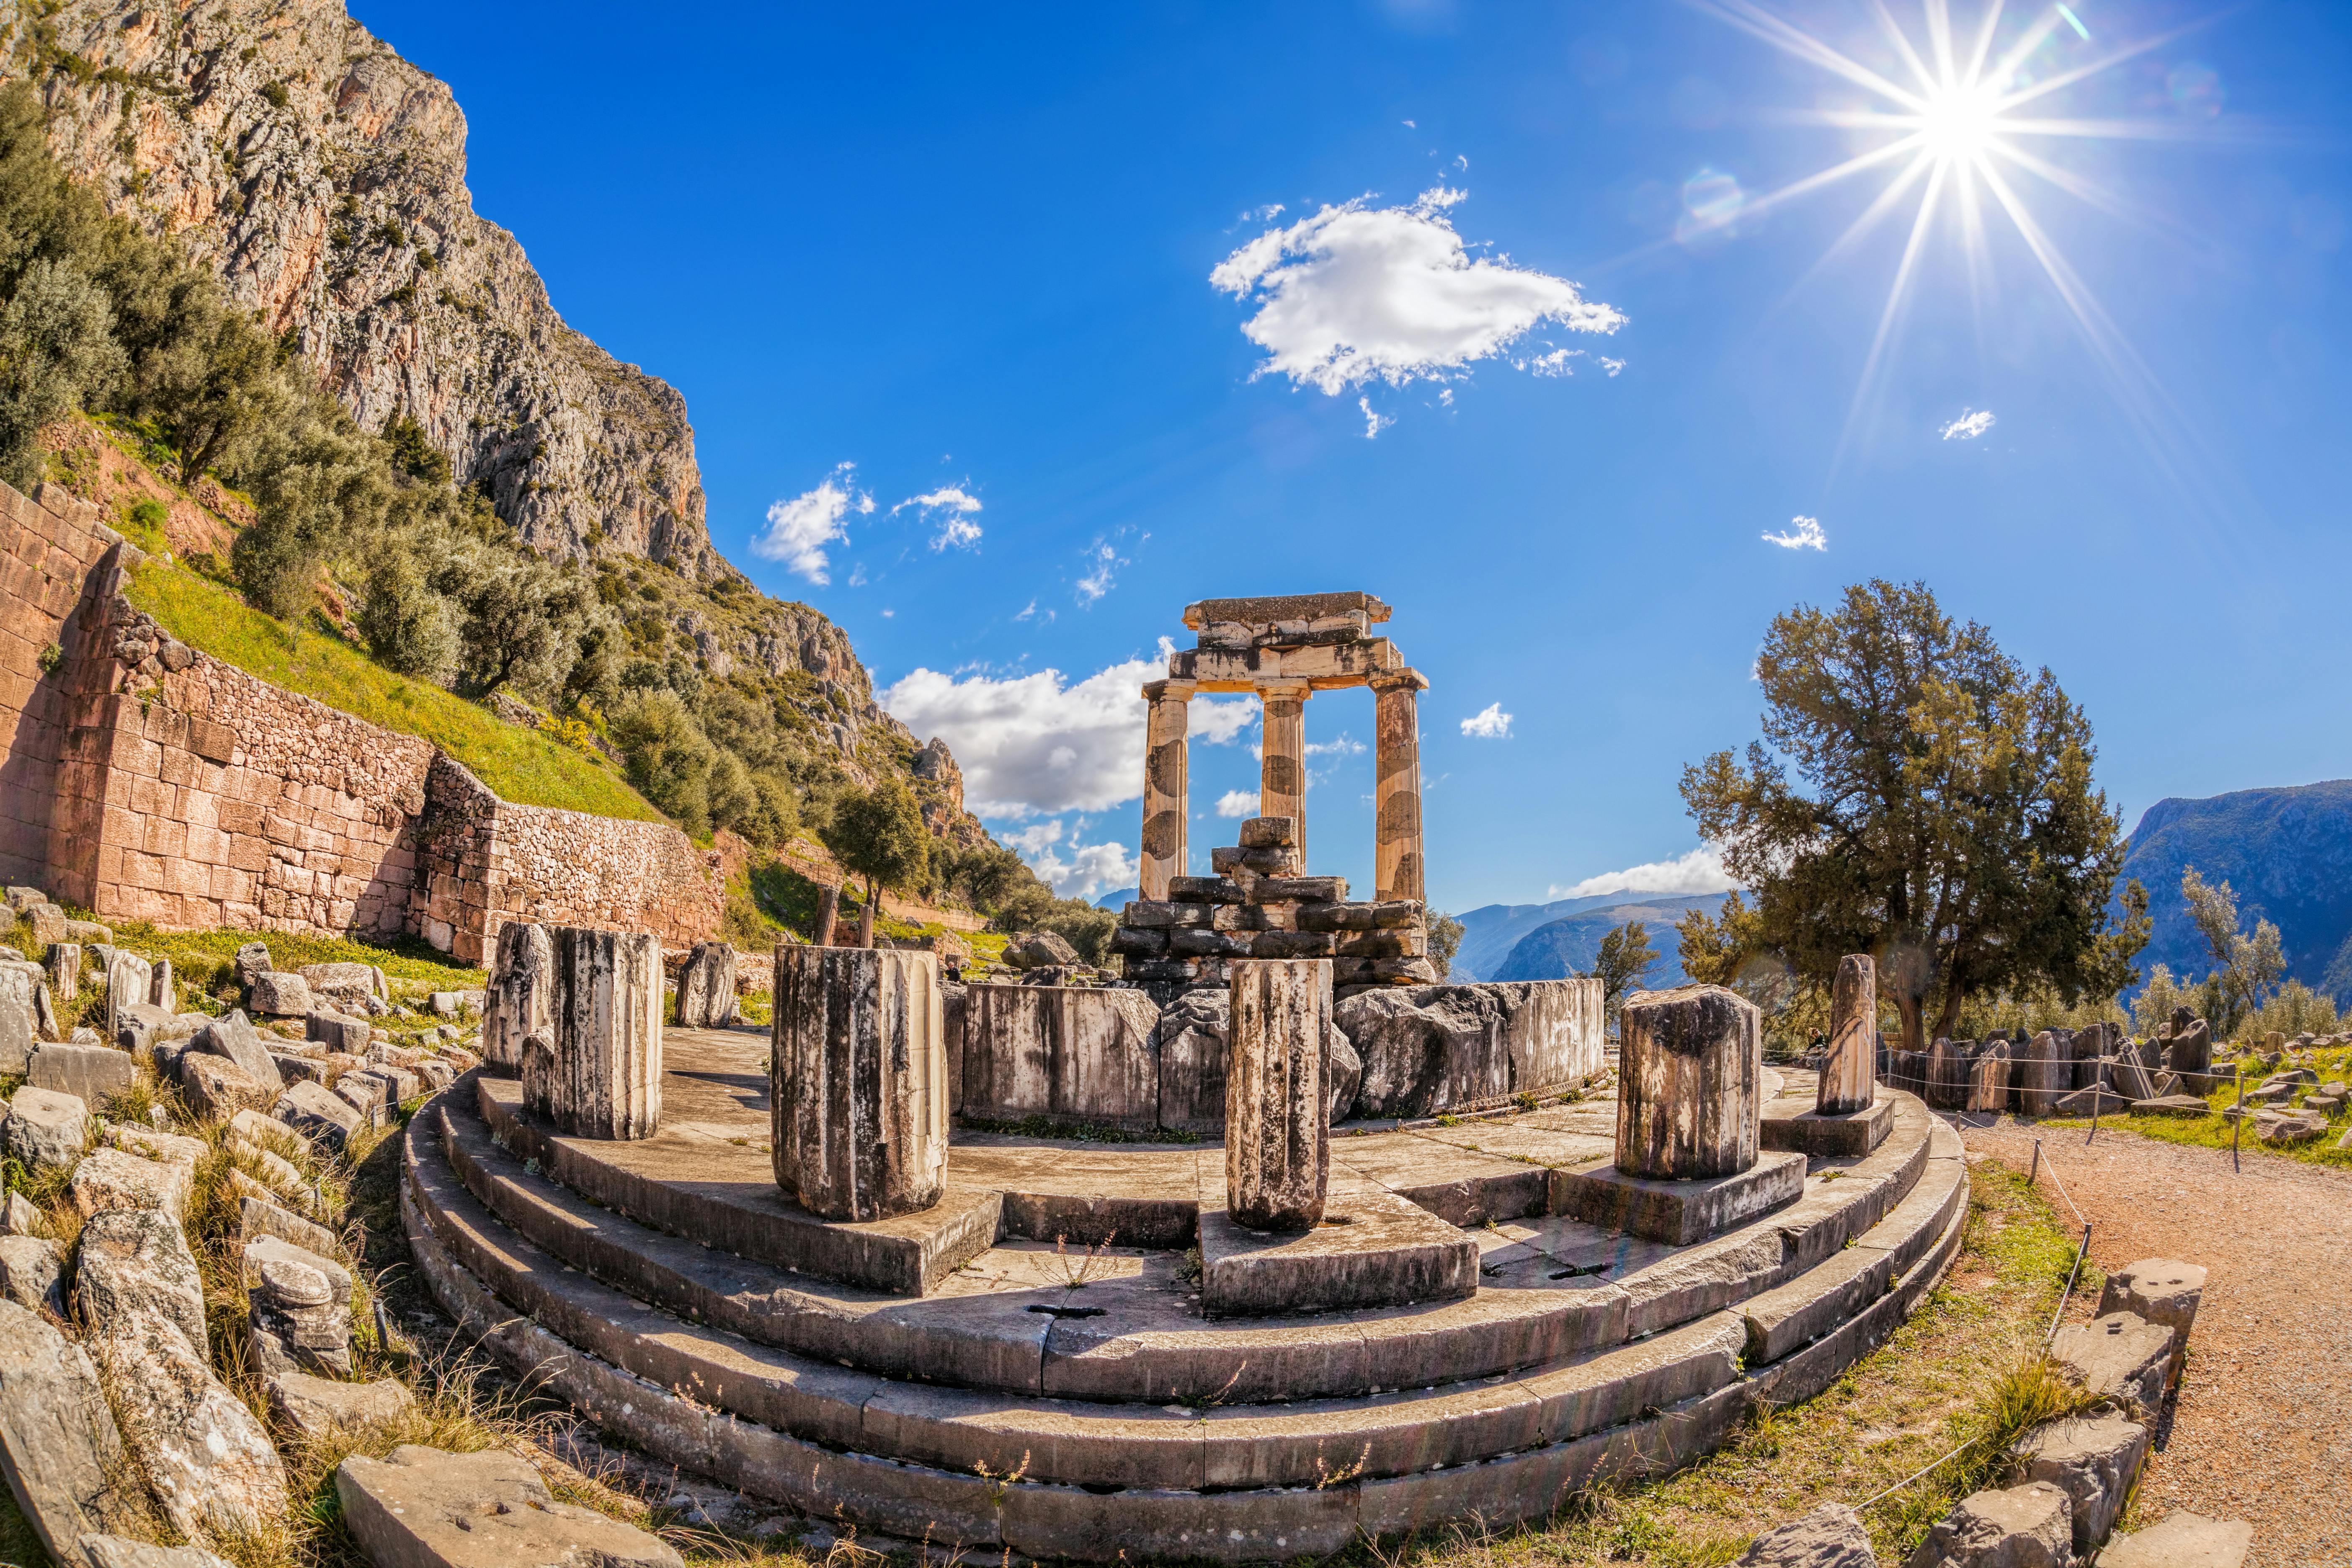 Sítio arqueológico Delphi com realidade virtual de Atenas